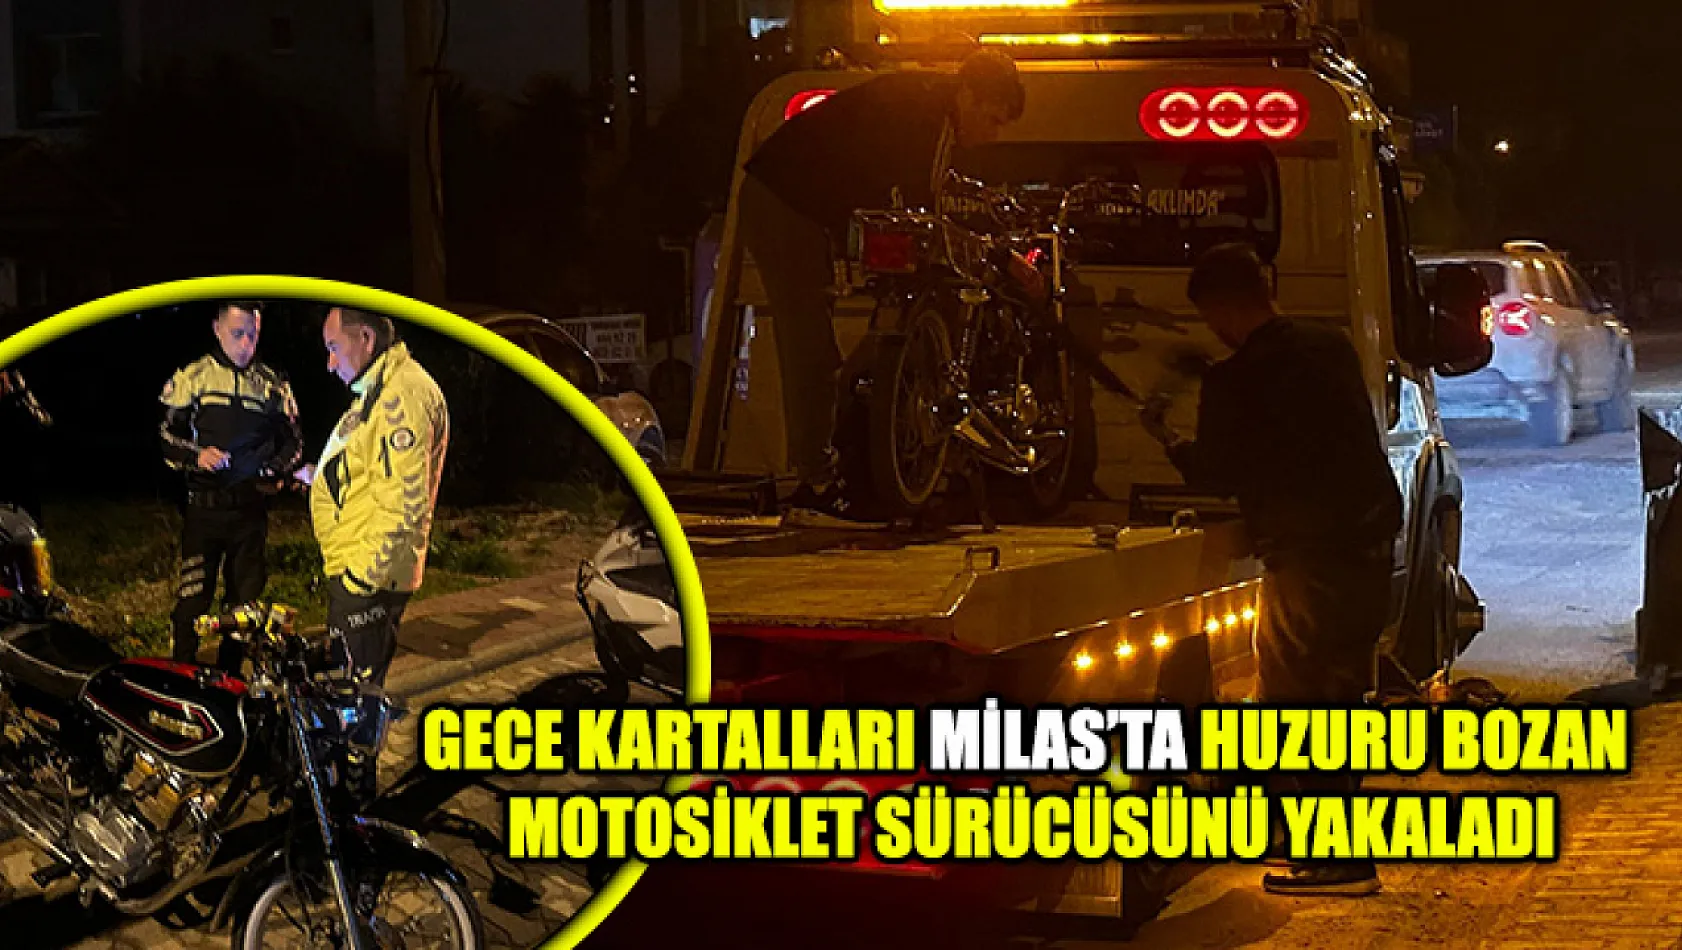 Gece Kartalları Milas'ta Huzuru Bozan Motosiklet Sürücüsünü Yakaladı